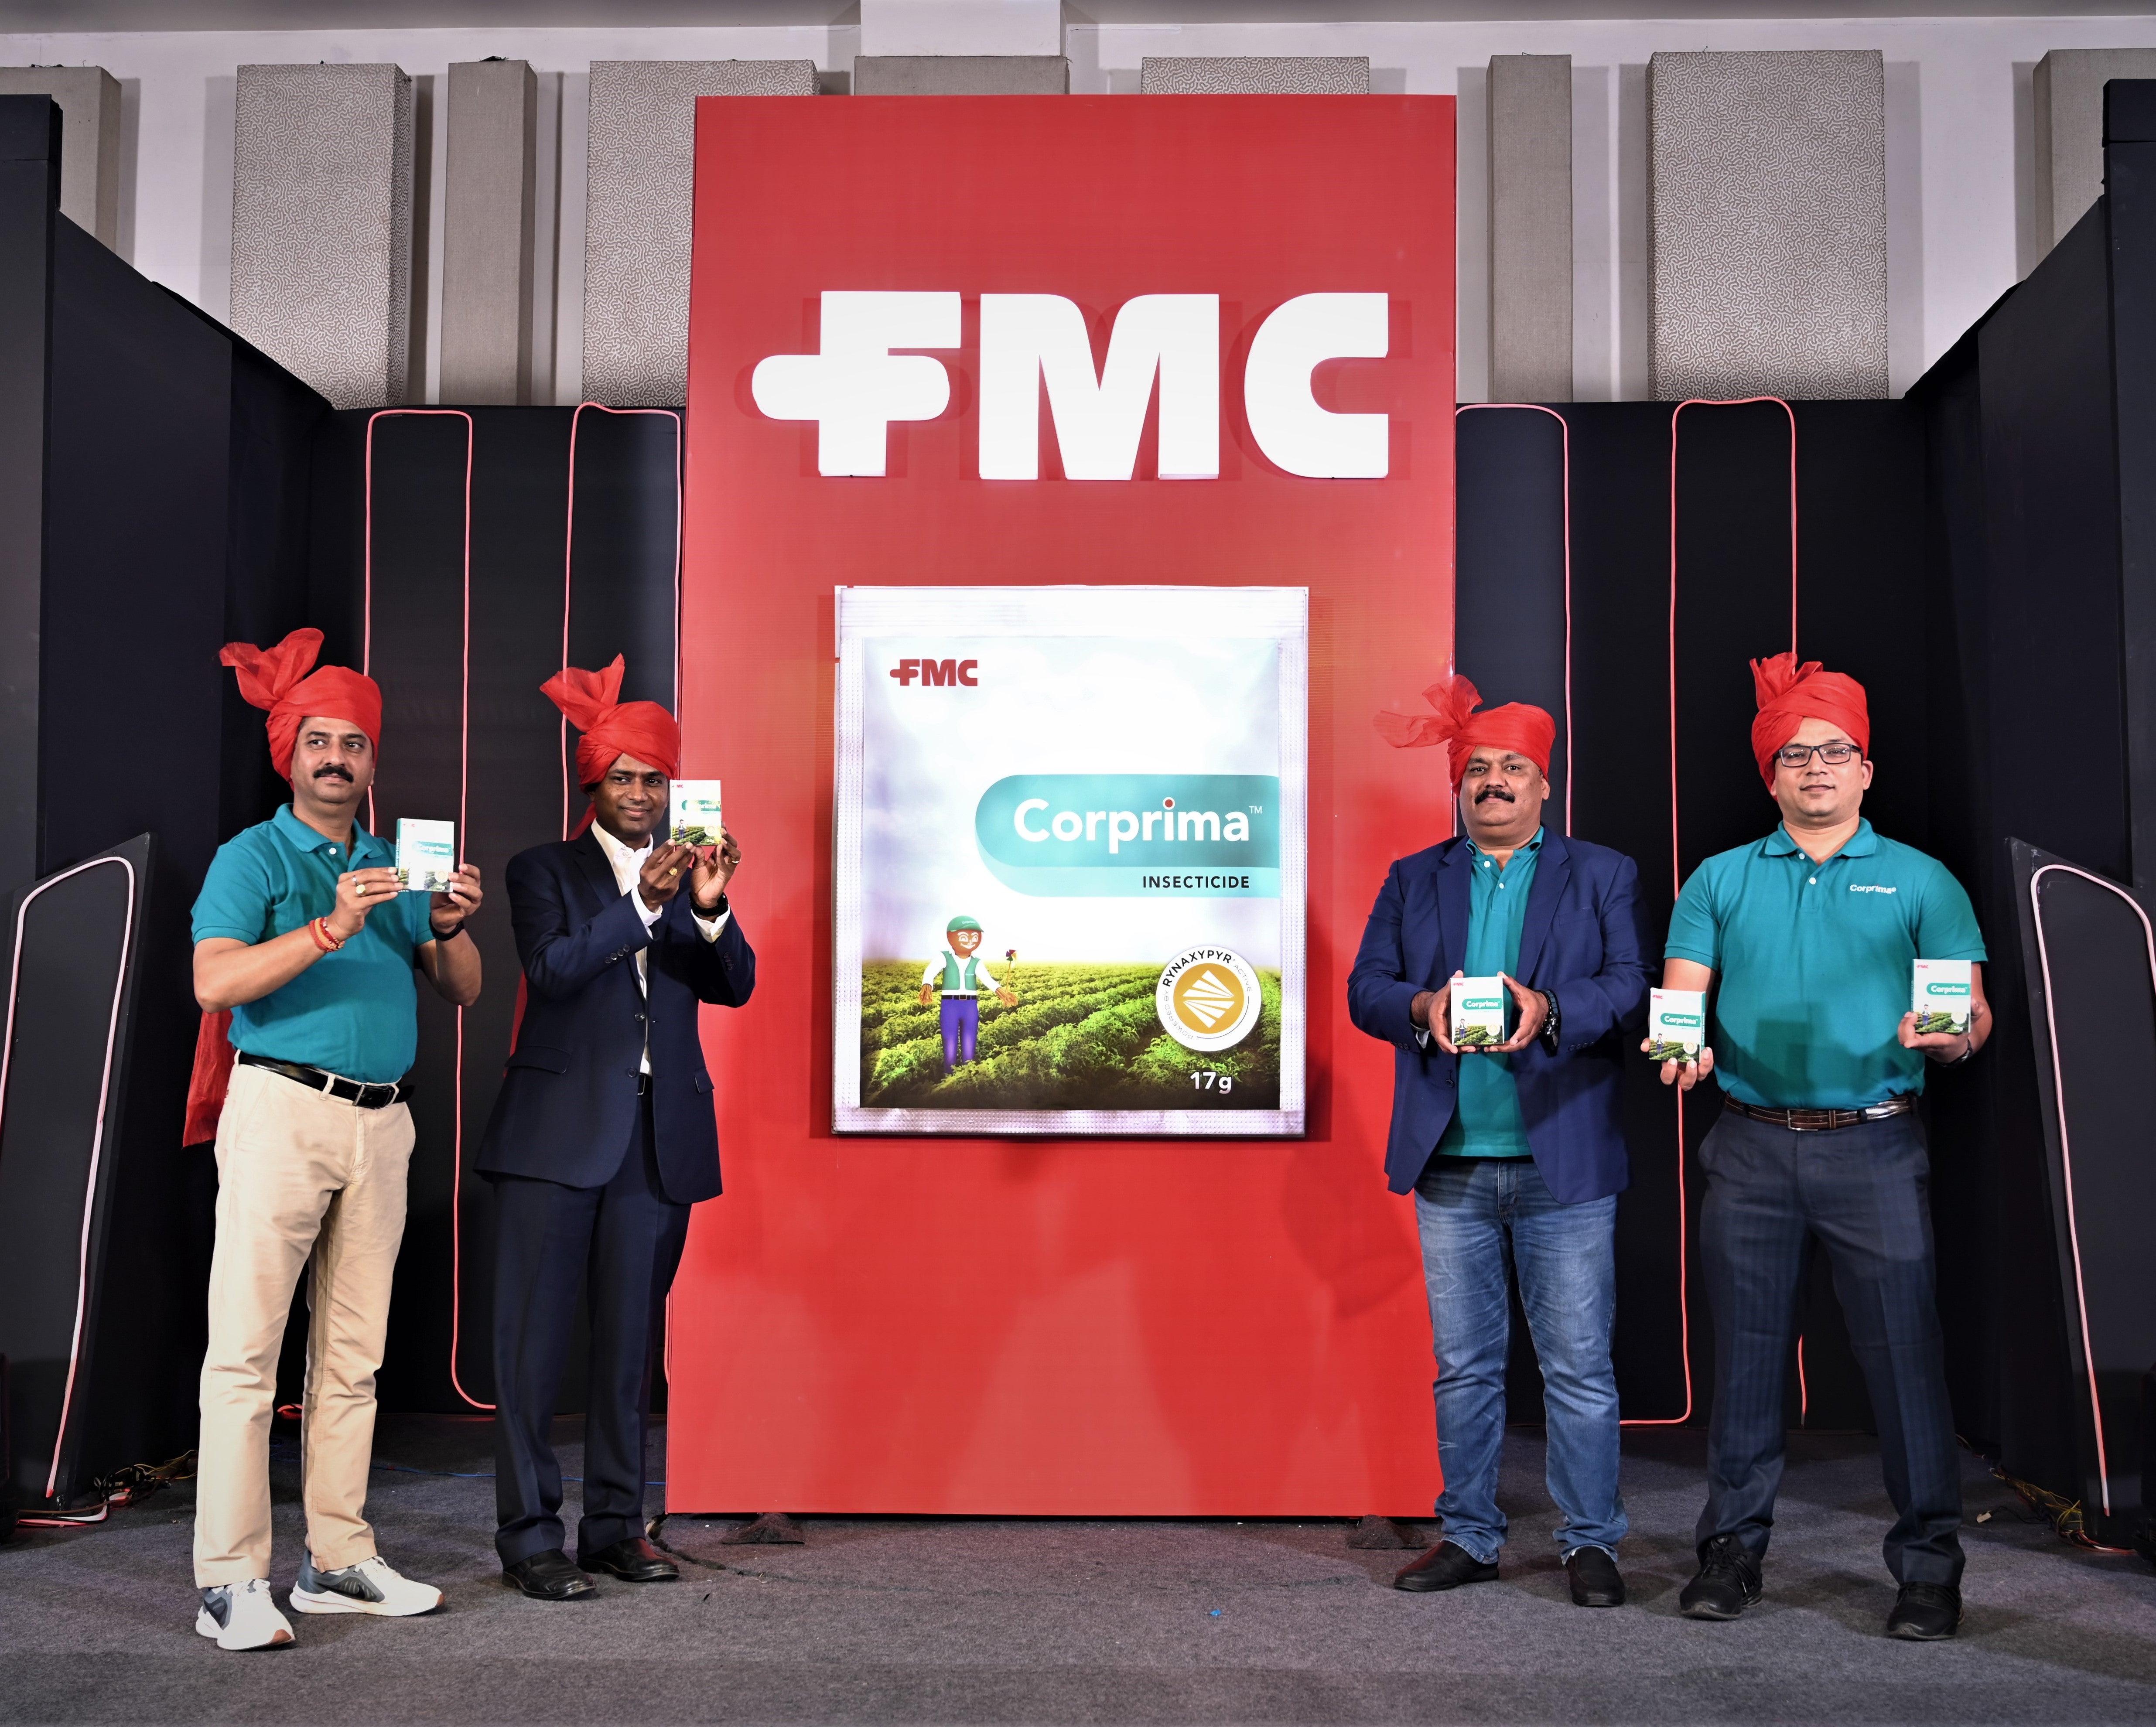 एफएमसी इंडिया ने टमाटर और भिंडी की फसल उगाने वाले किसानों की सहायता के लिए एक नया कीटनाशक कॉरप्रिमा लॉन्च किया है